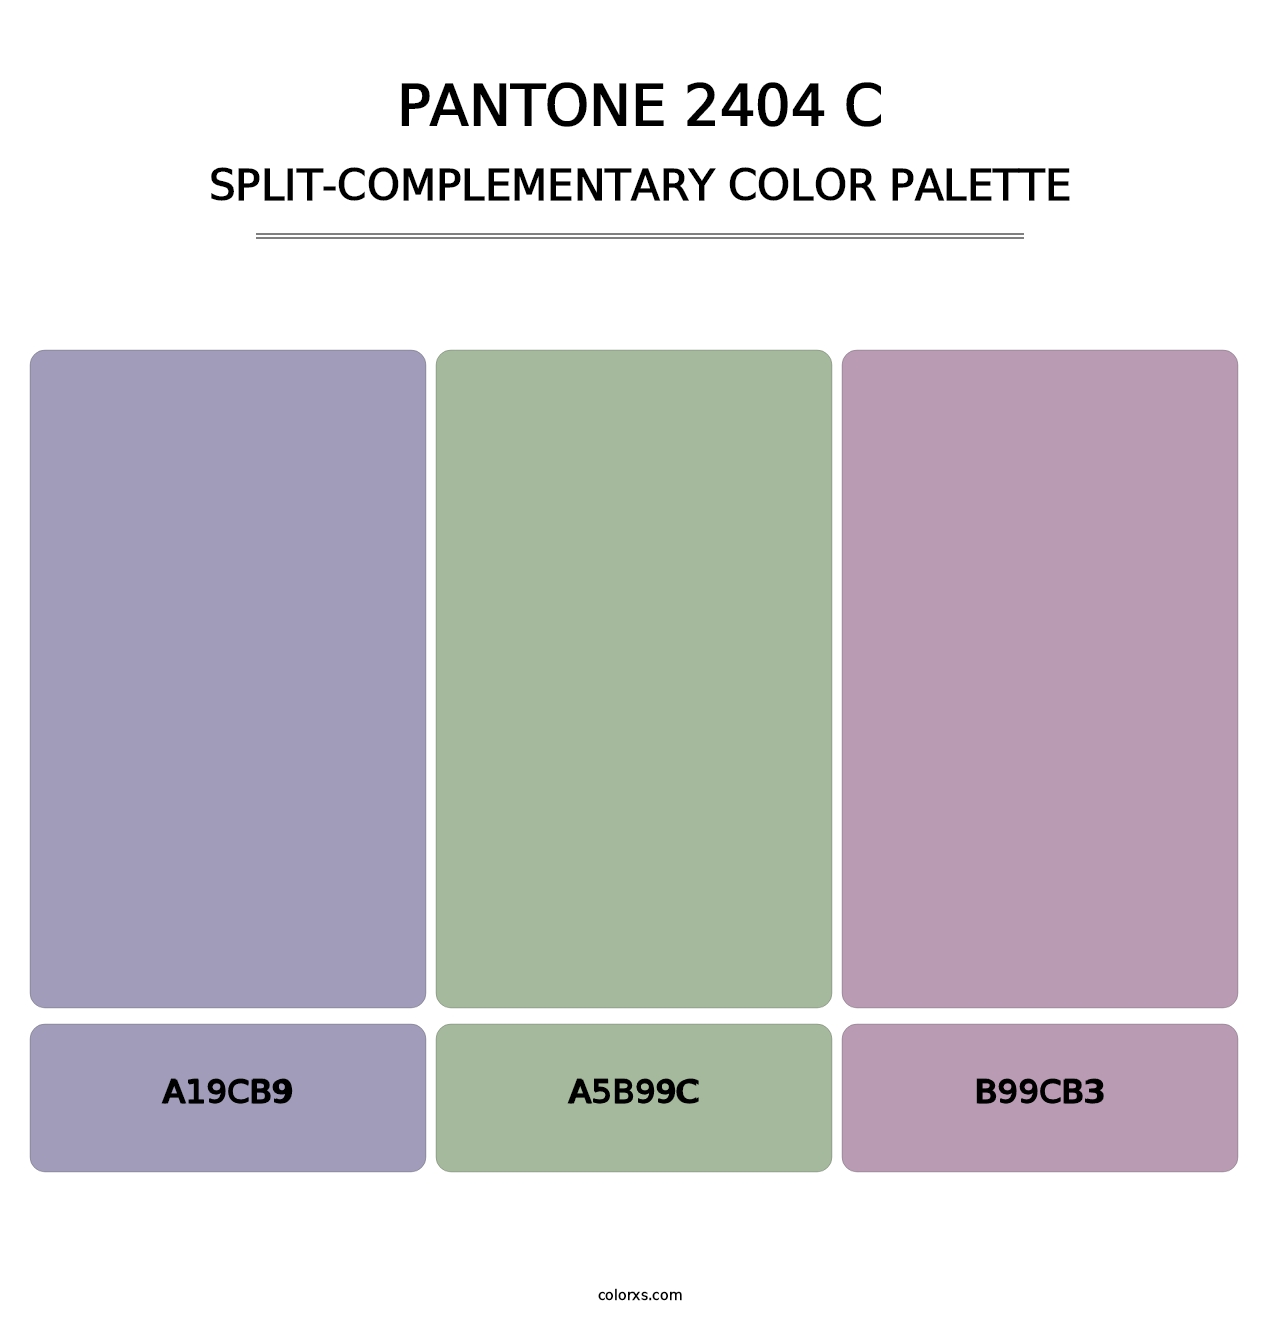 PANTONE 2404 C - Split-Complementary Color Palette